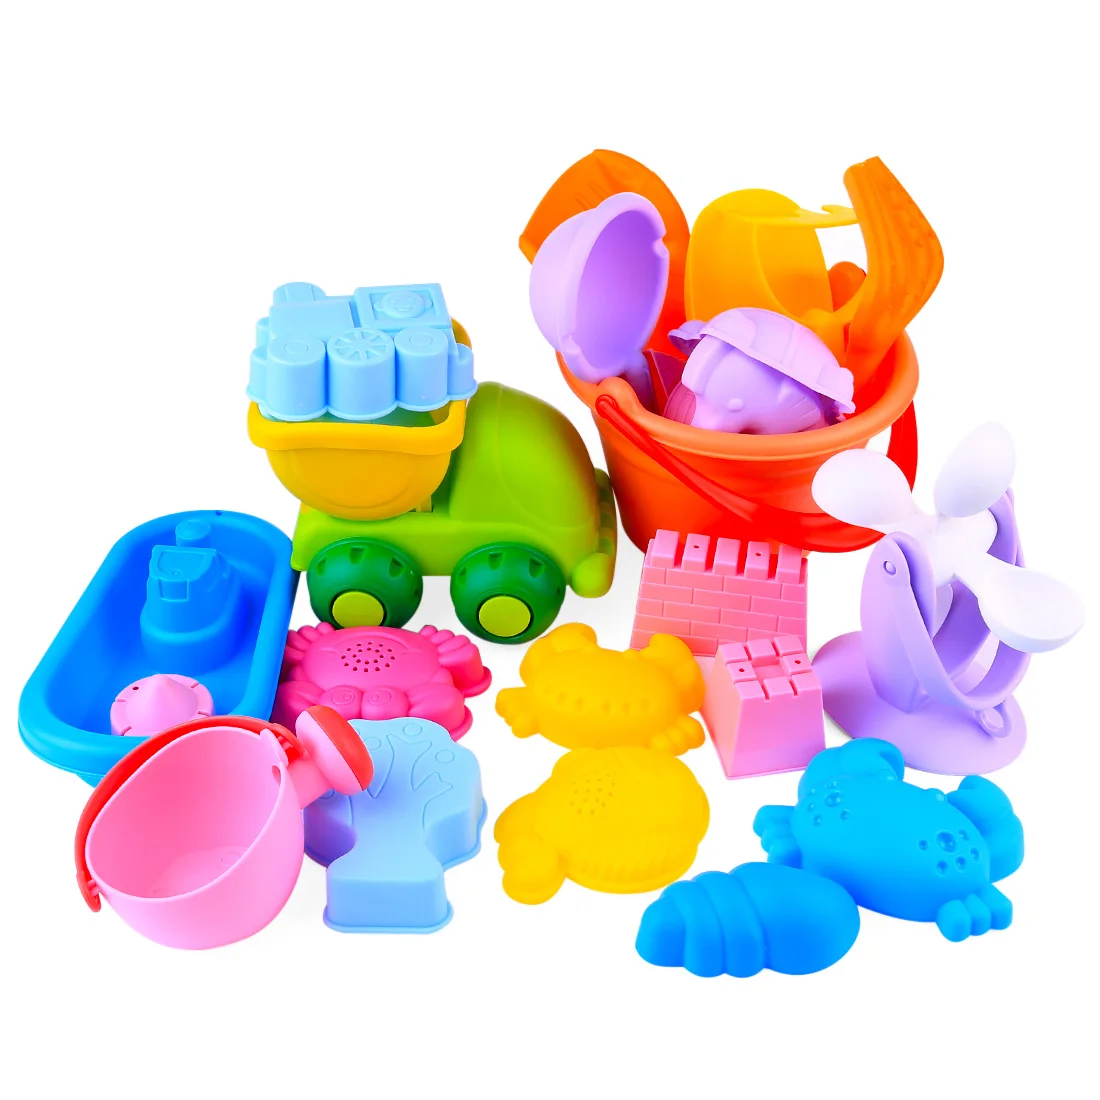 Новое поступление 26 шт Открытый Пляж игрушки для песка мягкие резиновые пляжный набор игрушек для детей набор для детей креативный подарок